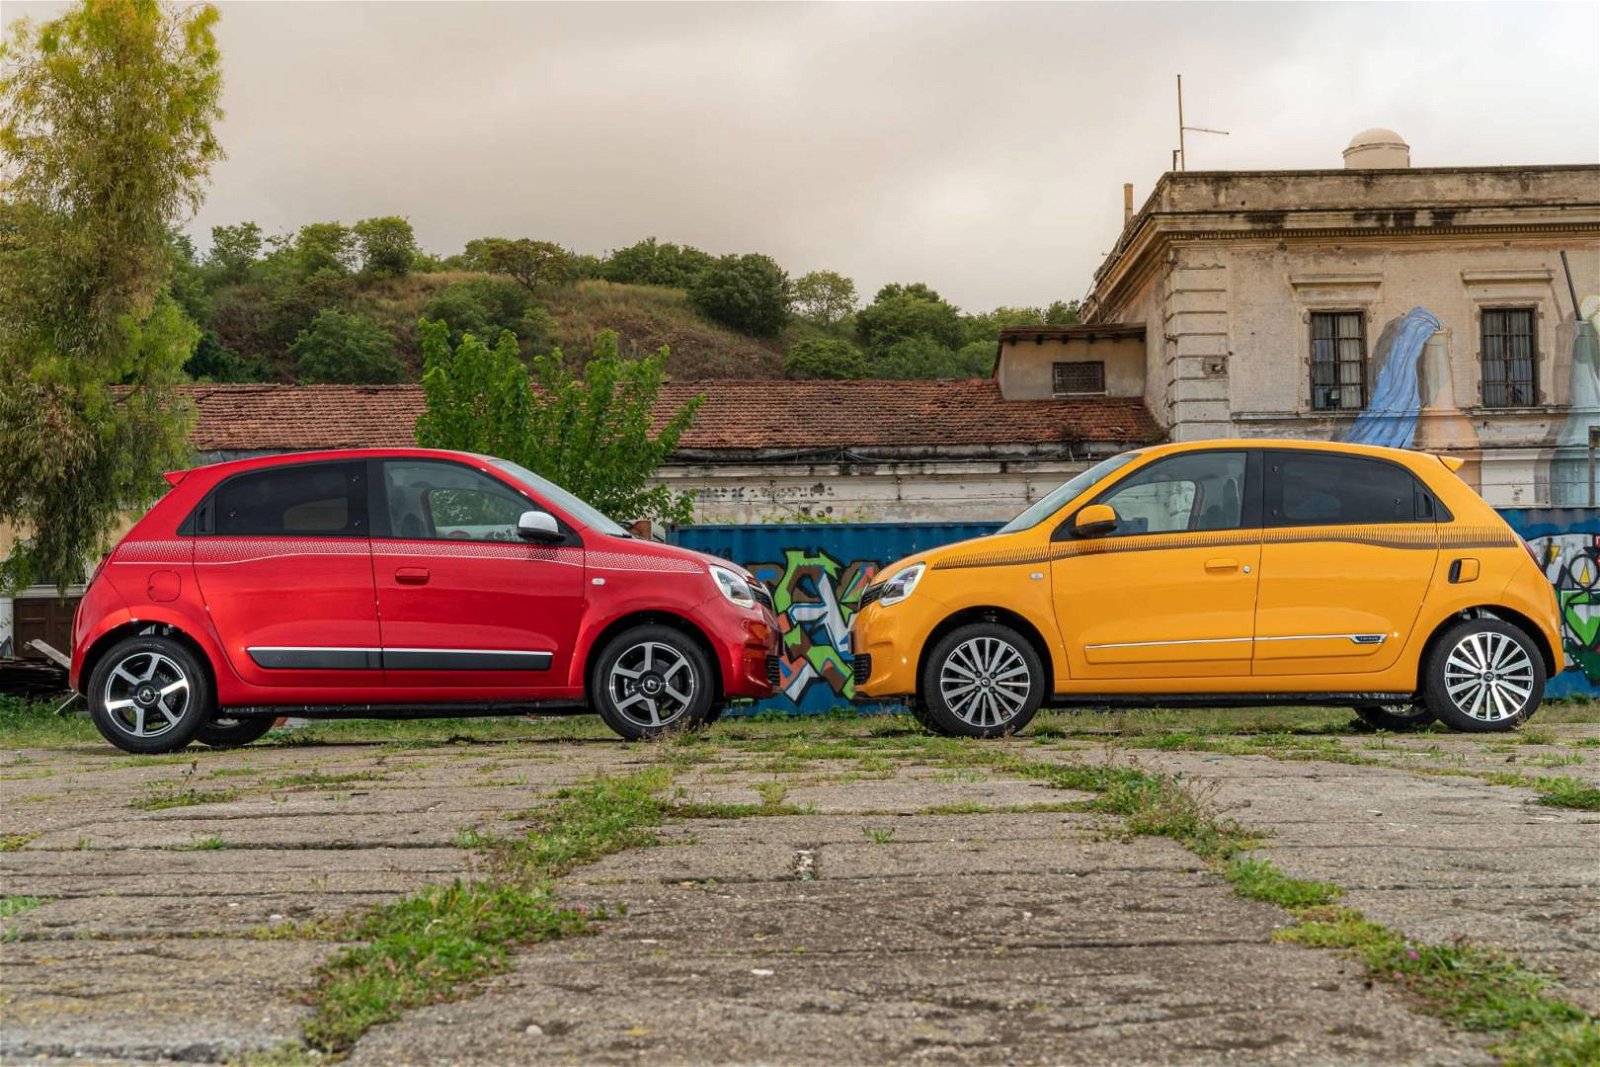 Immagine di Renault Twingo 2019: l'urban car agile e connessa